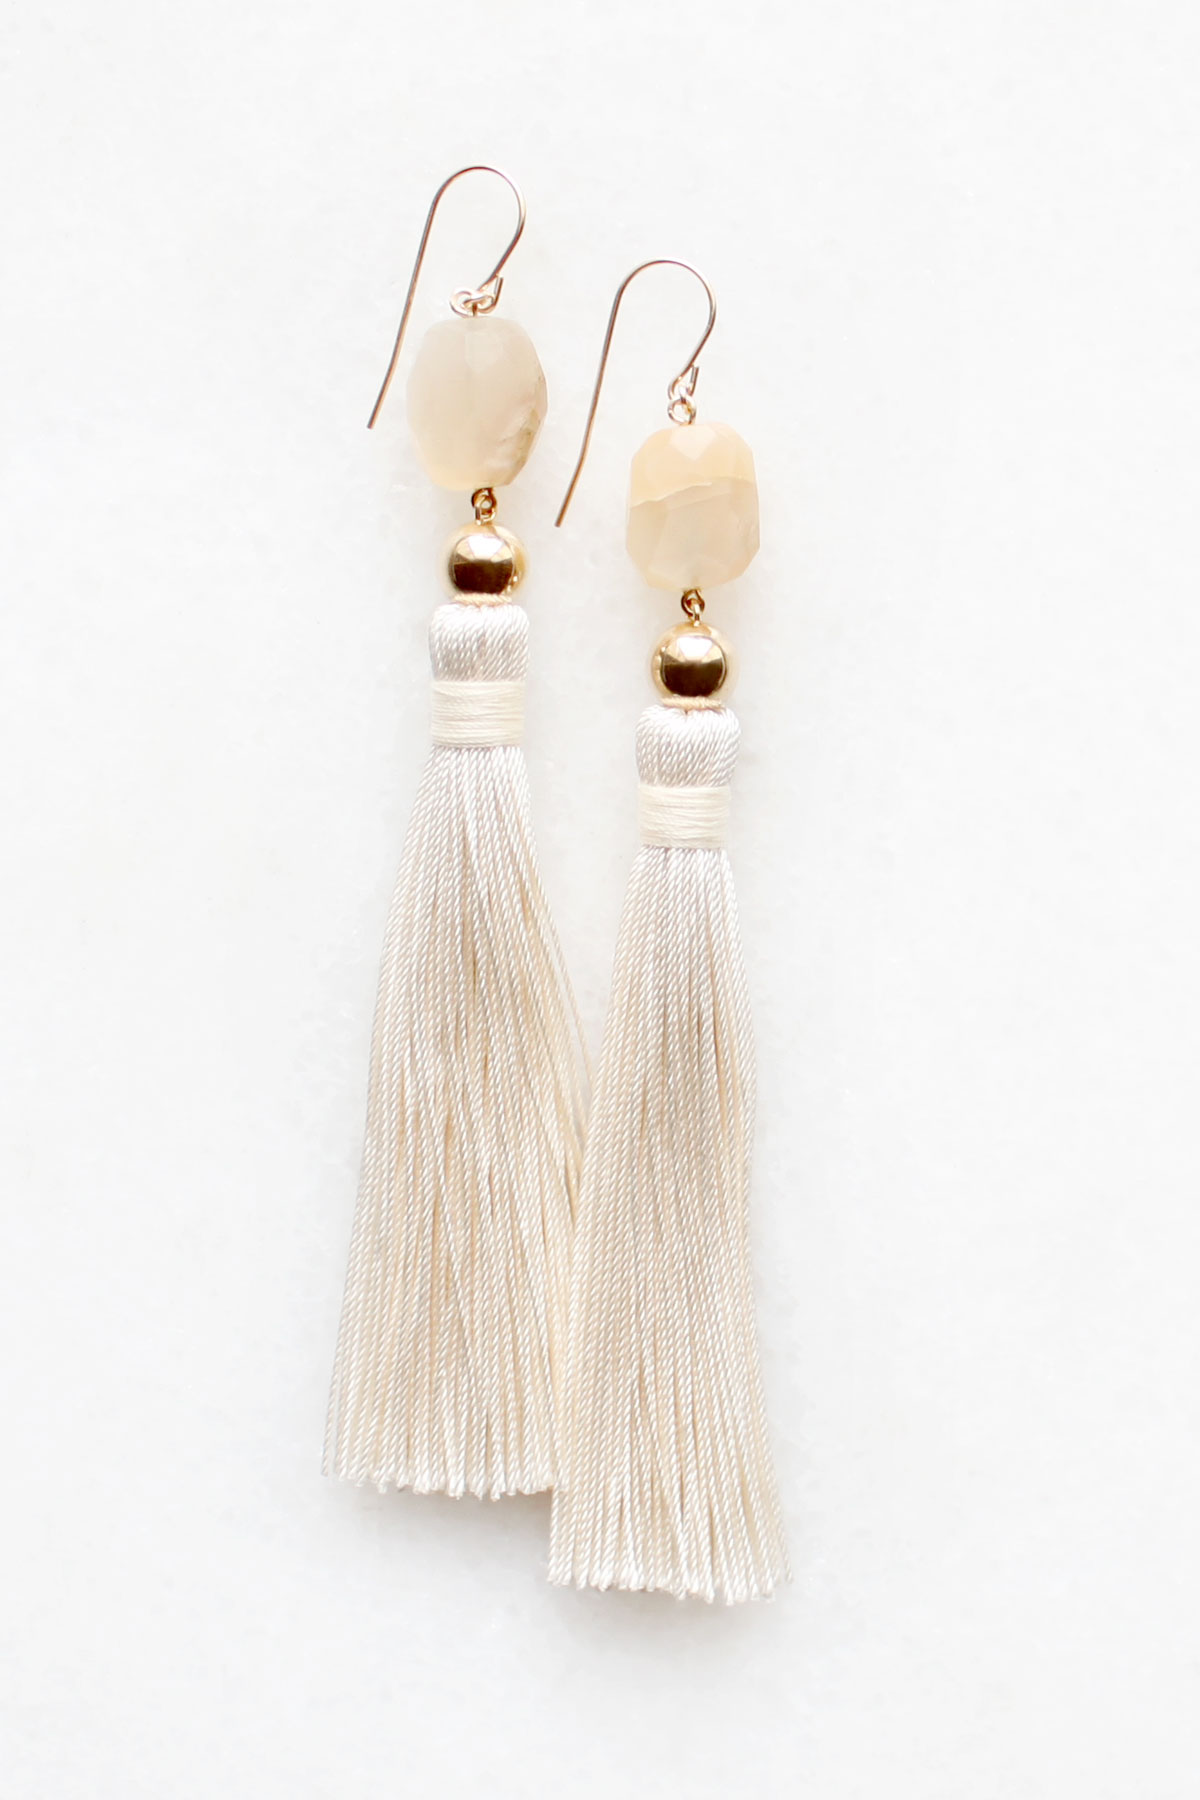 Moonstone Silk Tassel Earrings by The Vamoose